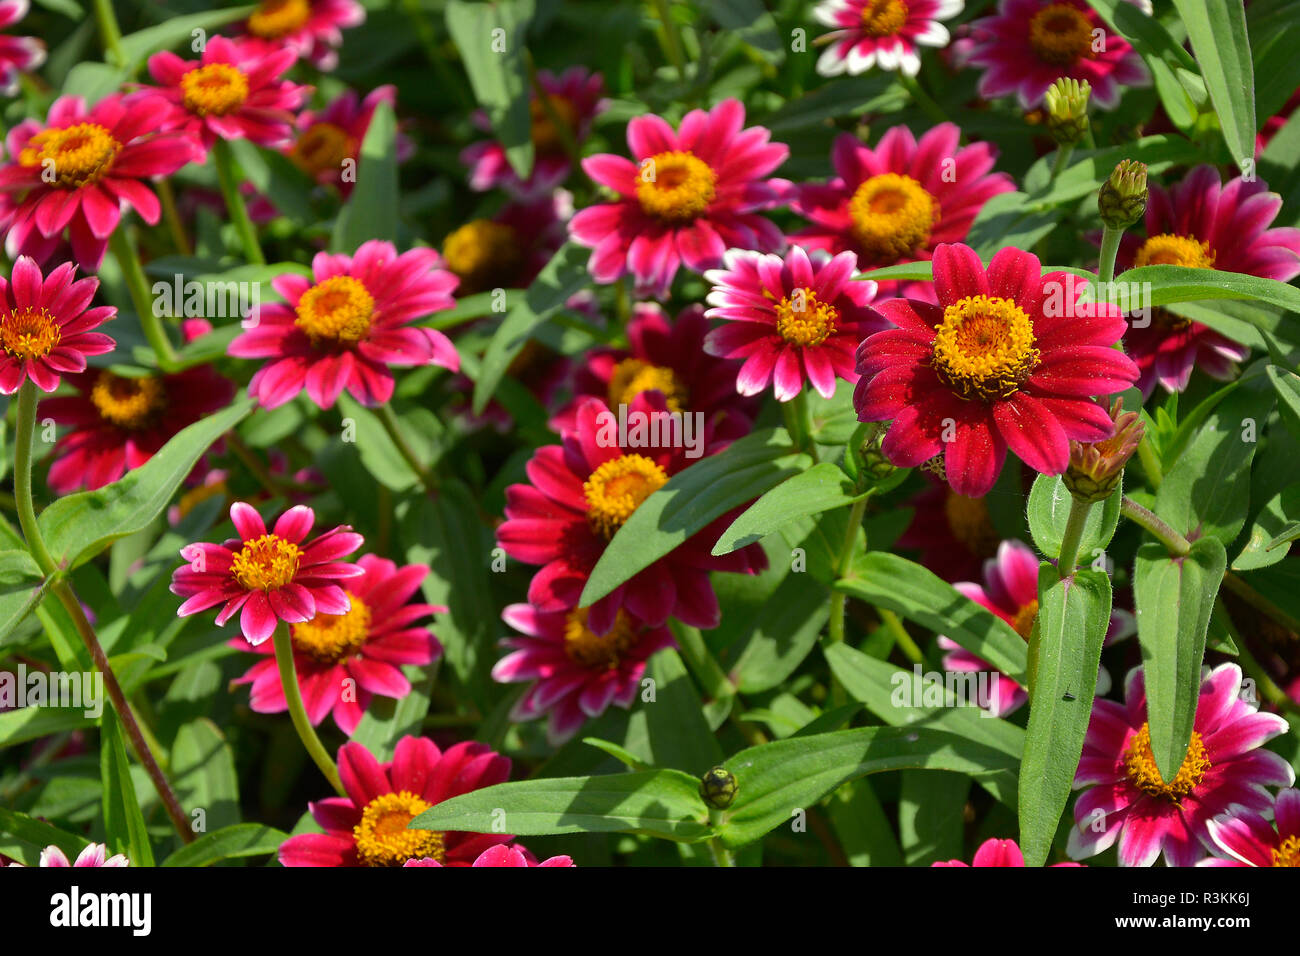 Gros plan d'une frontière avec la floraison de fleurs colouful Zinnia 'Rose' Pico loufoques Banque D'Images